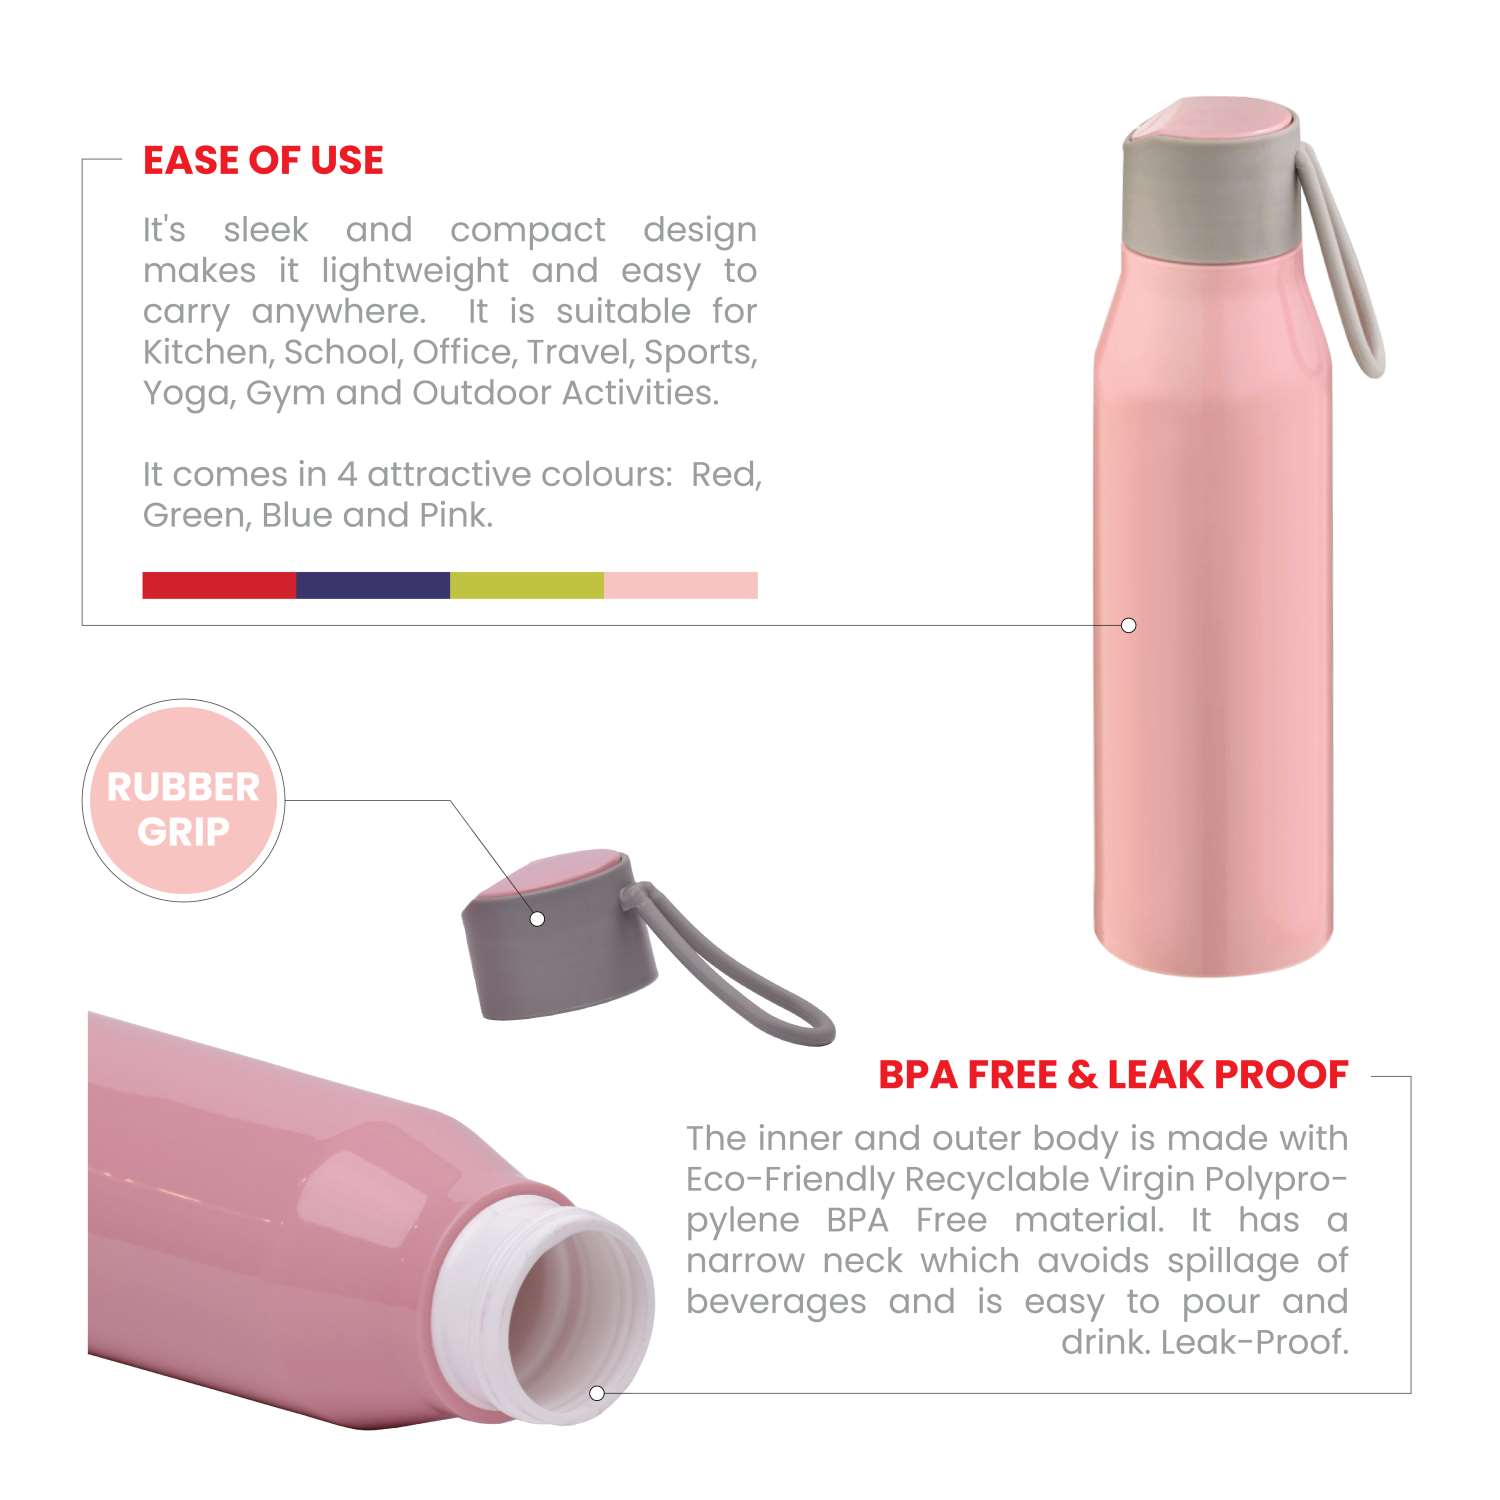 Selvel Bolt Plastic Water Bottle Pink 500Ml